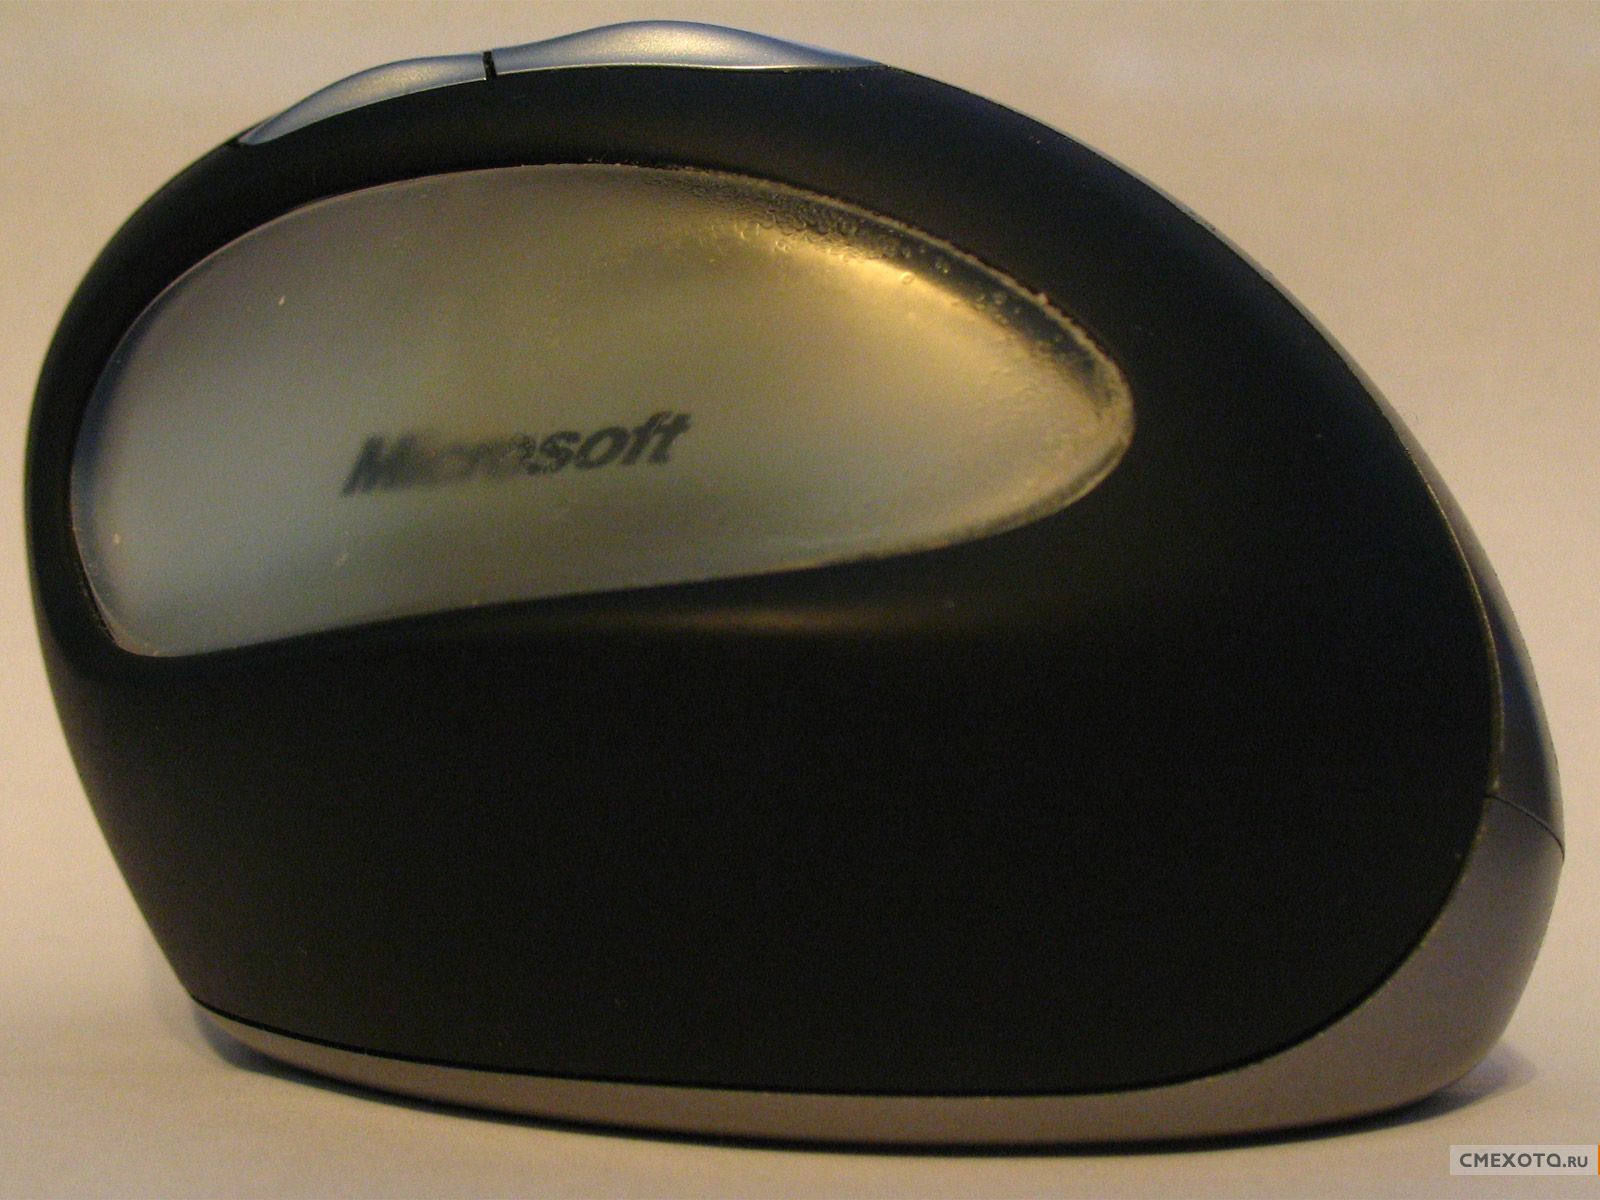 Обзор клавиатуры Microsoft Natural Ergonomic 7000 (вся правда матка)